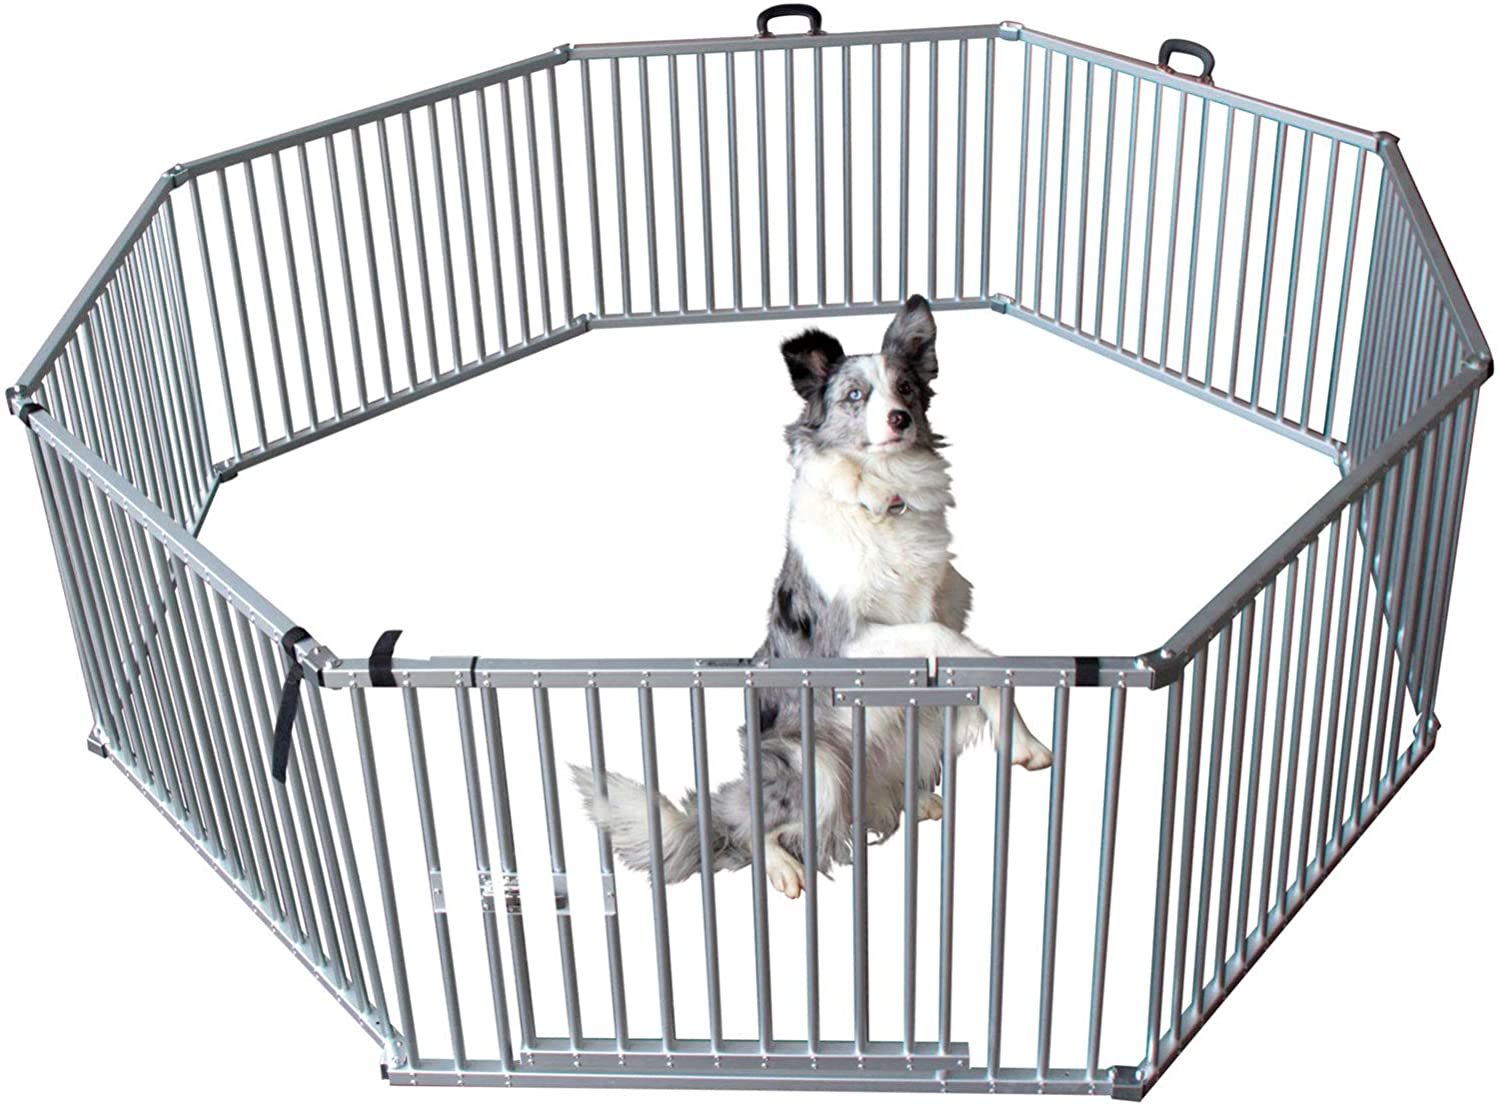  Corral de aluminio para mascotas plegable y portátil, tamaño L, de Callieway® 